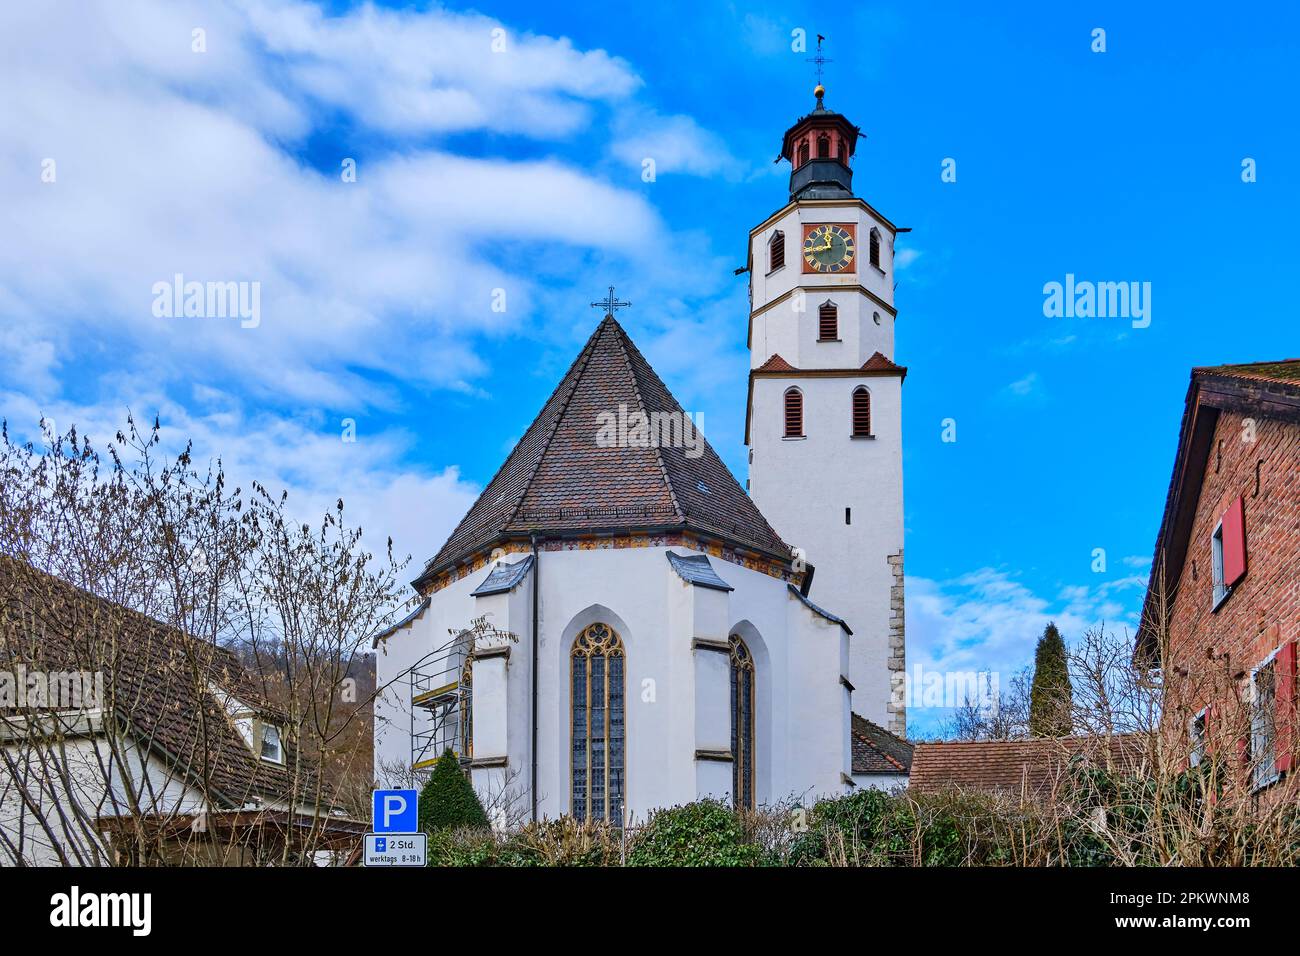 Die protestantische Kirche Peter und Paul in der Altstadt von Blaubeuren bei Ulm, Baden-Württemberg, Deutschland, Europa. Stockfoto